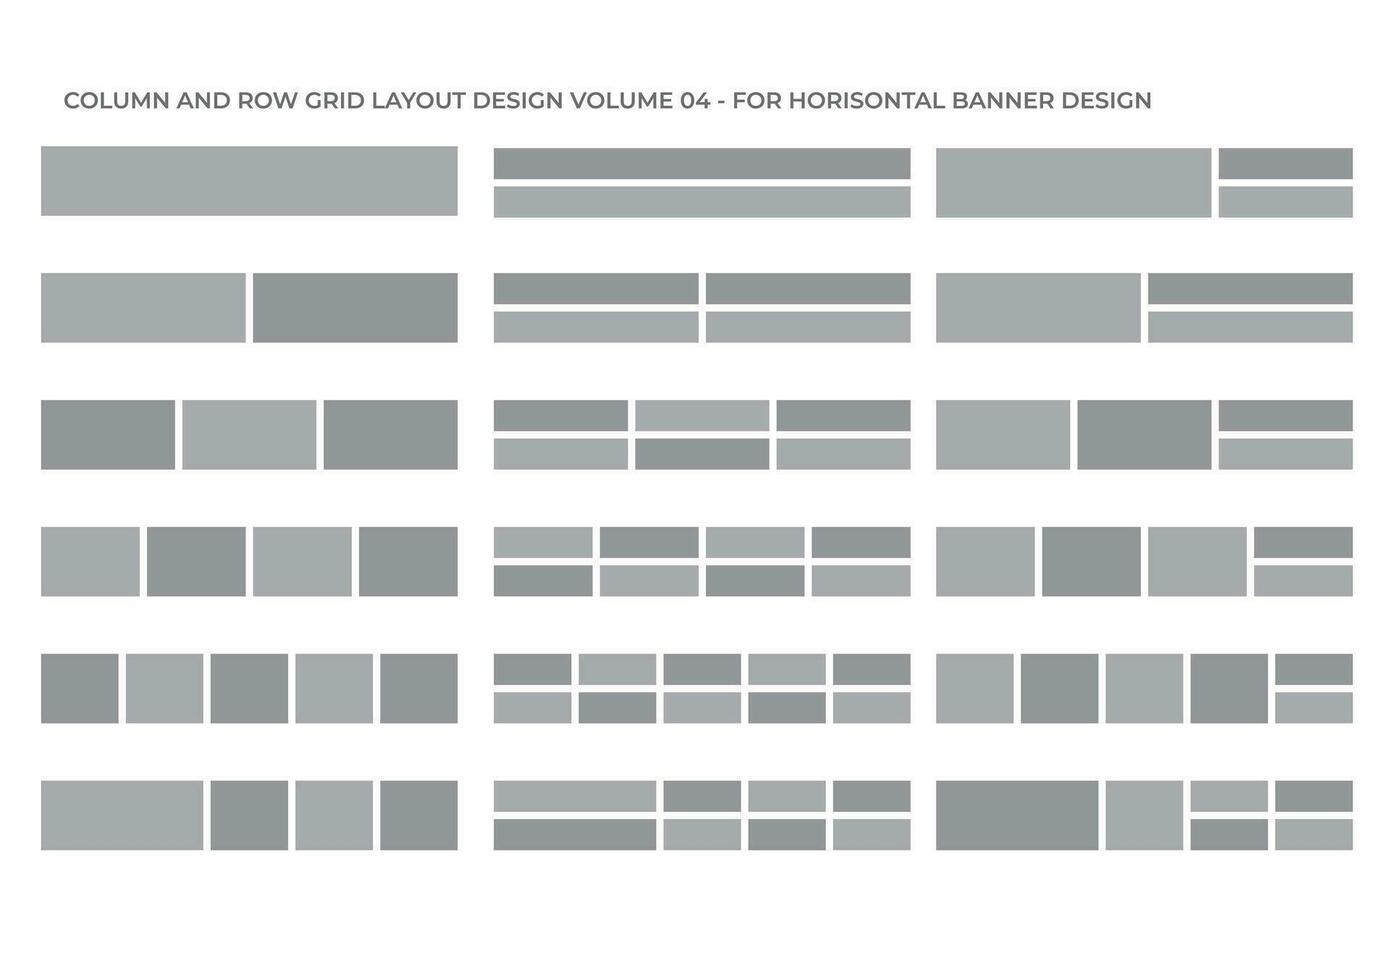 colonne et la grille pour horizontal bannière conception objectif composition vol 04 vecteur